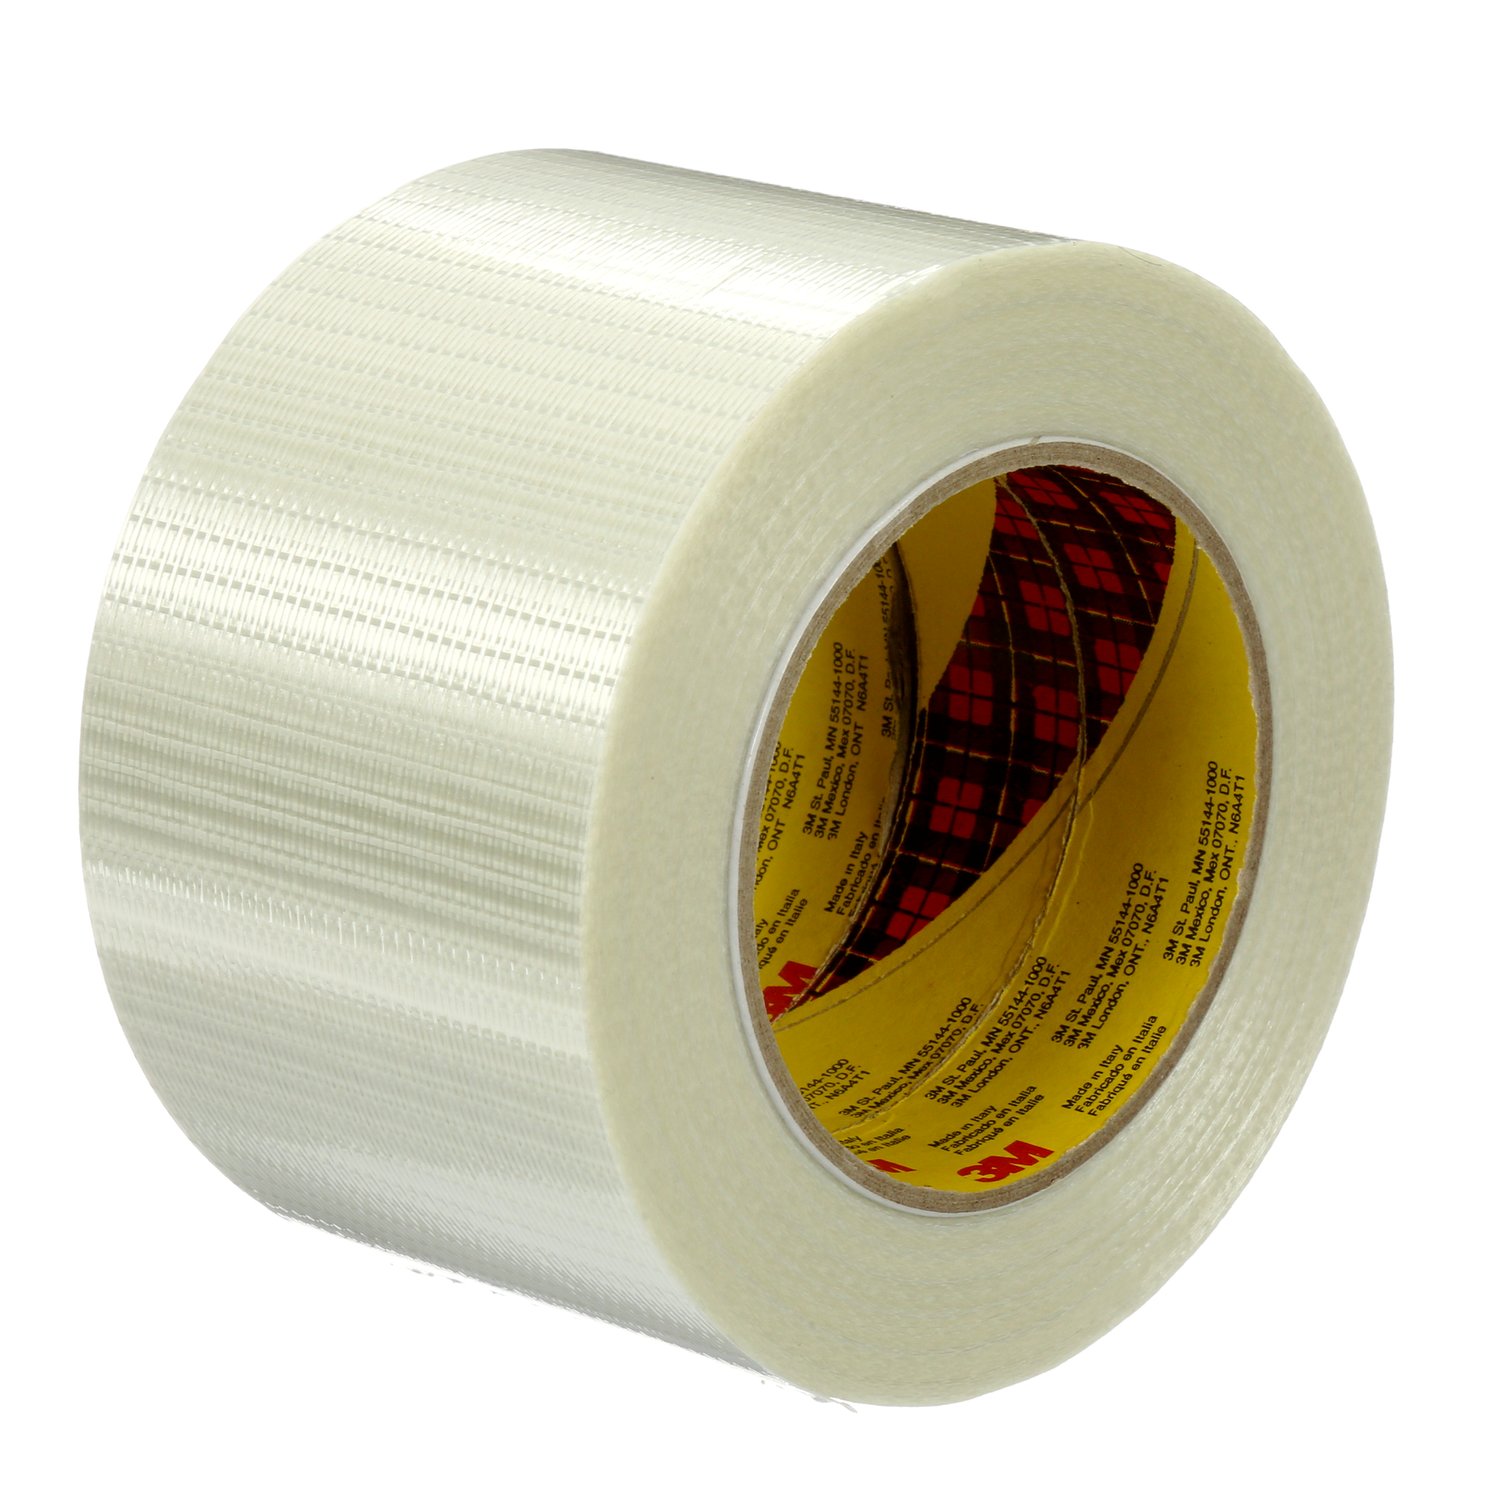 7000096087 - Scotch Bi-Directional Filament Tape 8959, Clear, 75 mm x 50 m, 5.7 mil,
12 rolls per case